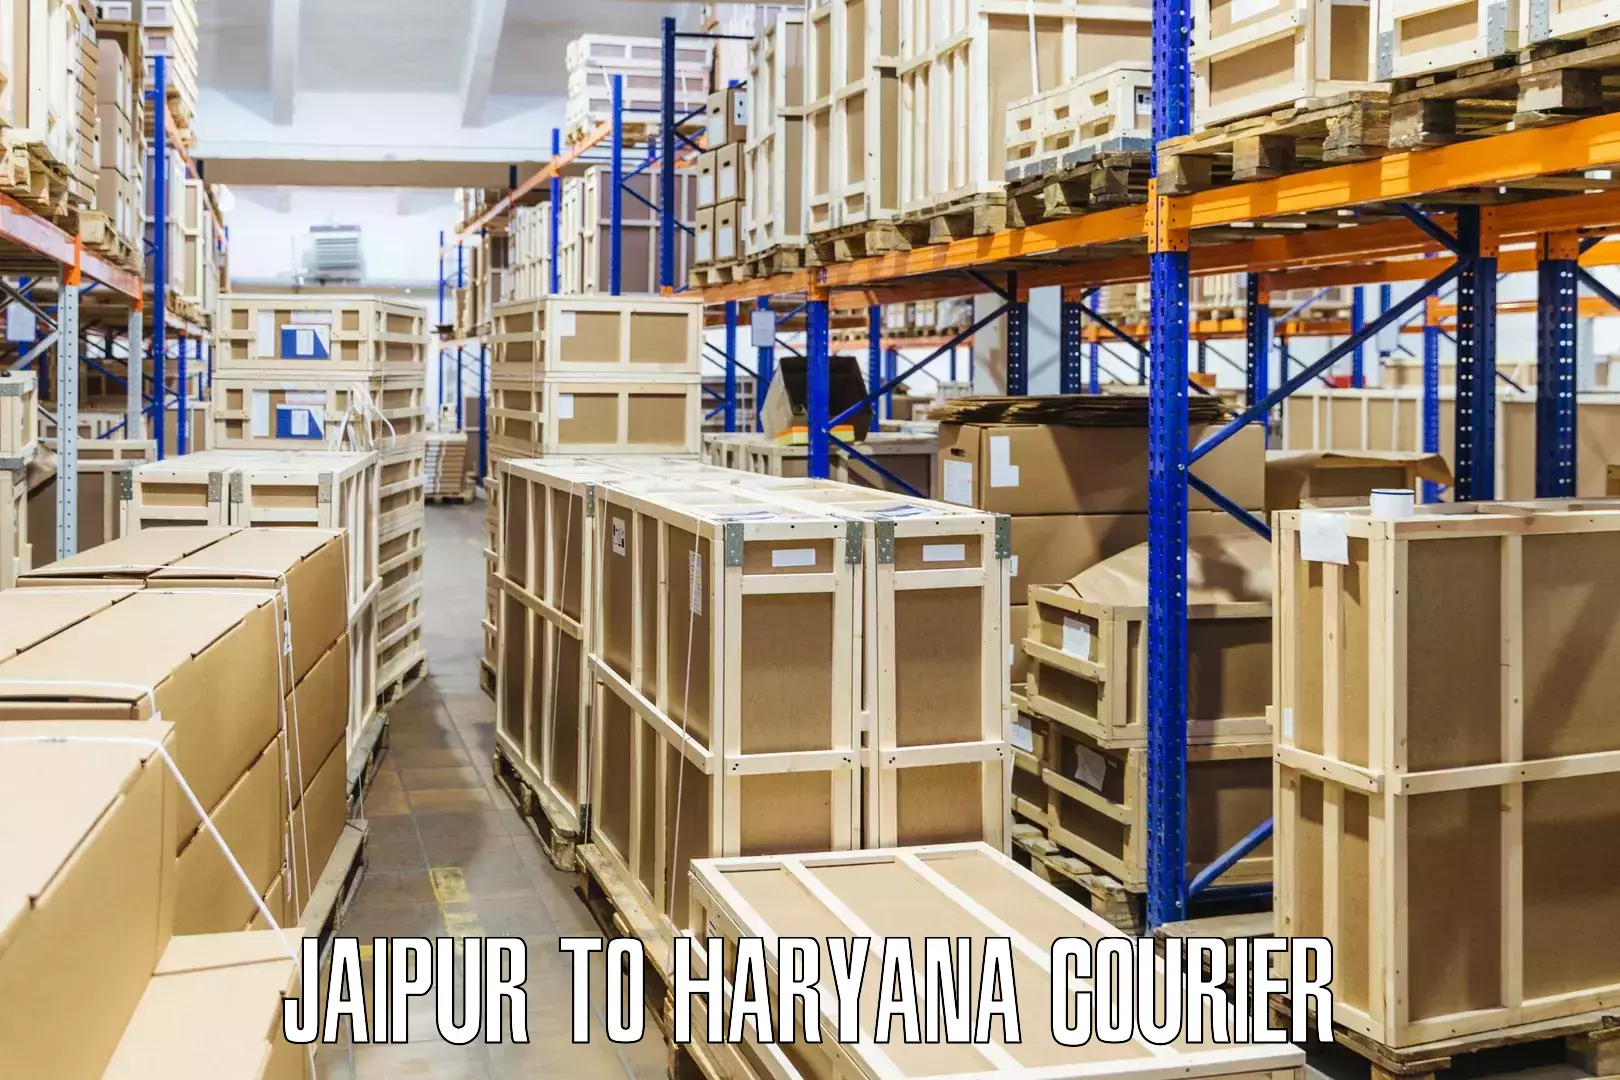 High-capacity parcel service Jaipur to Hansi